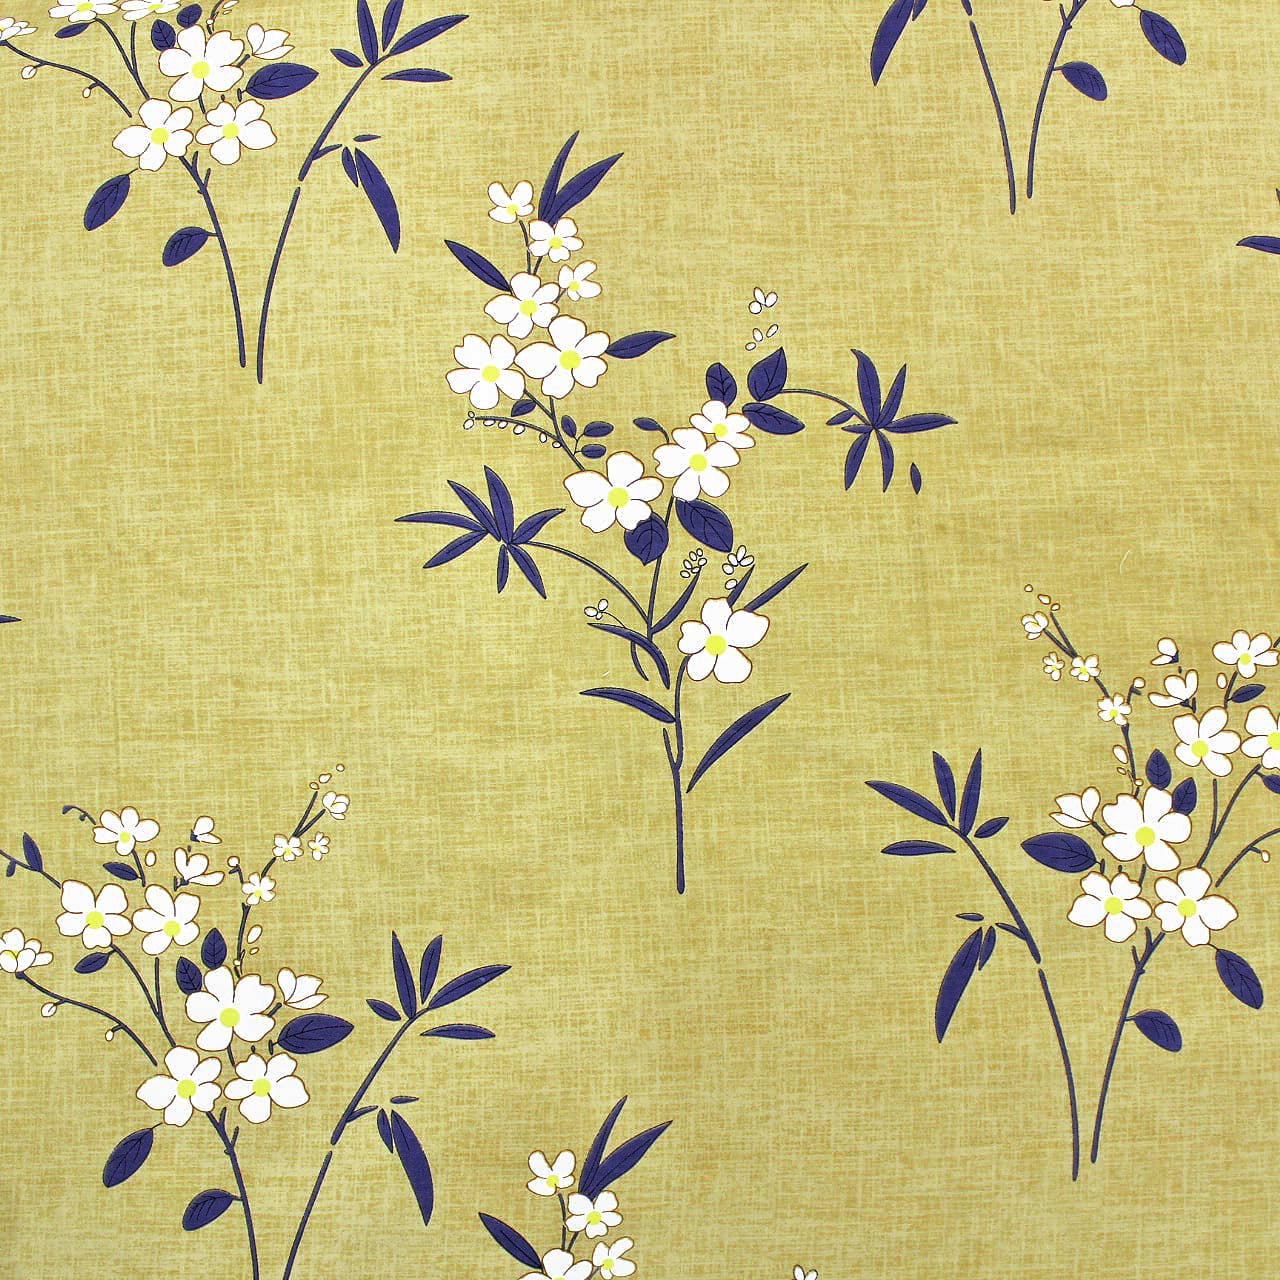 Microfiber Floral Reversible AC Dohar Blanket, Olive